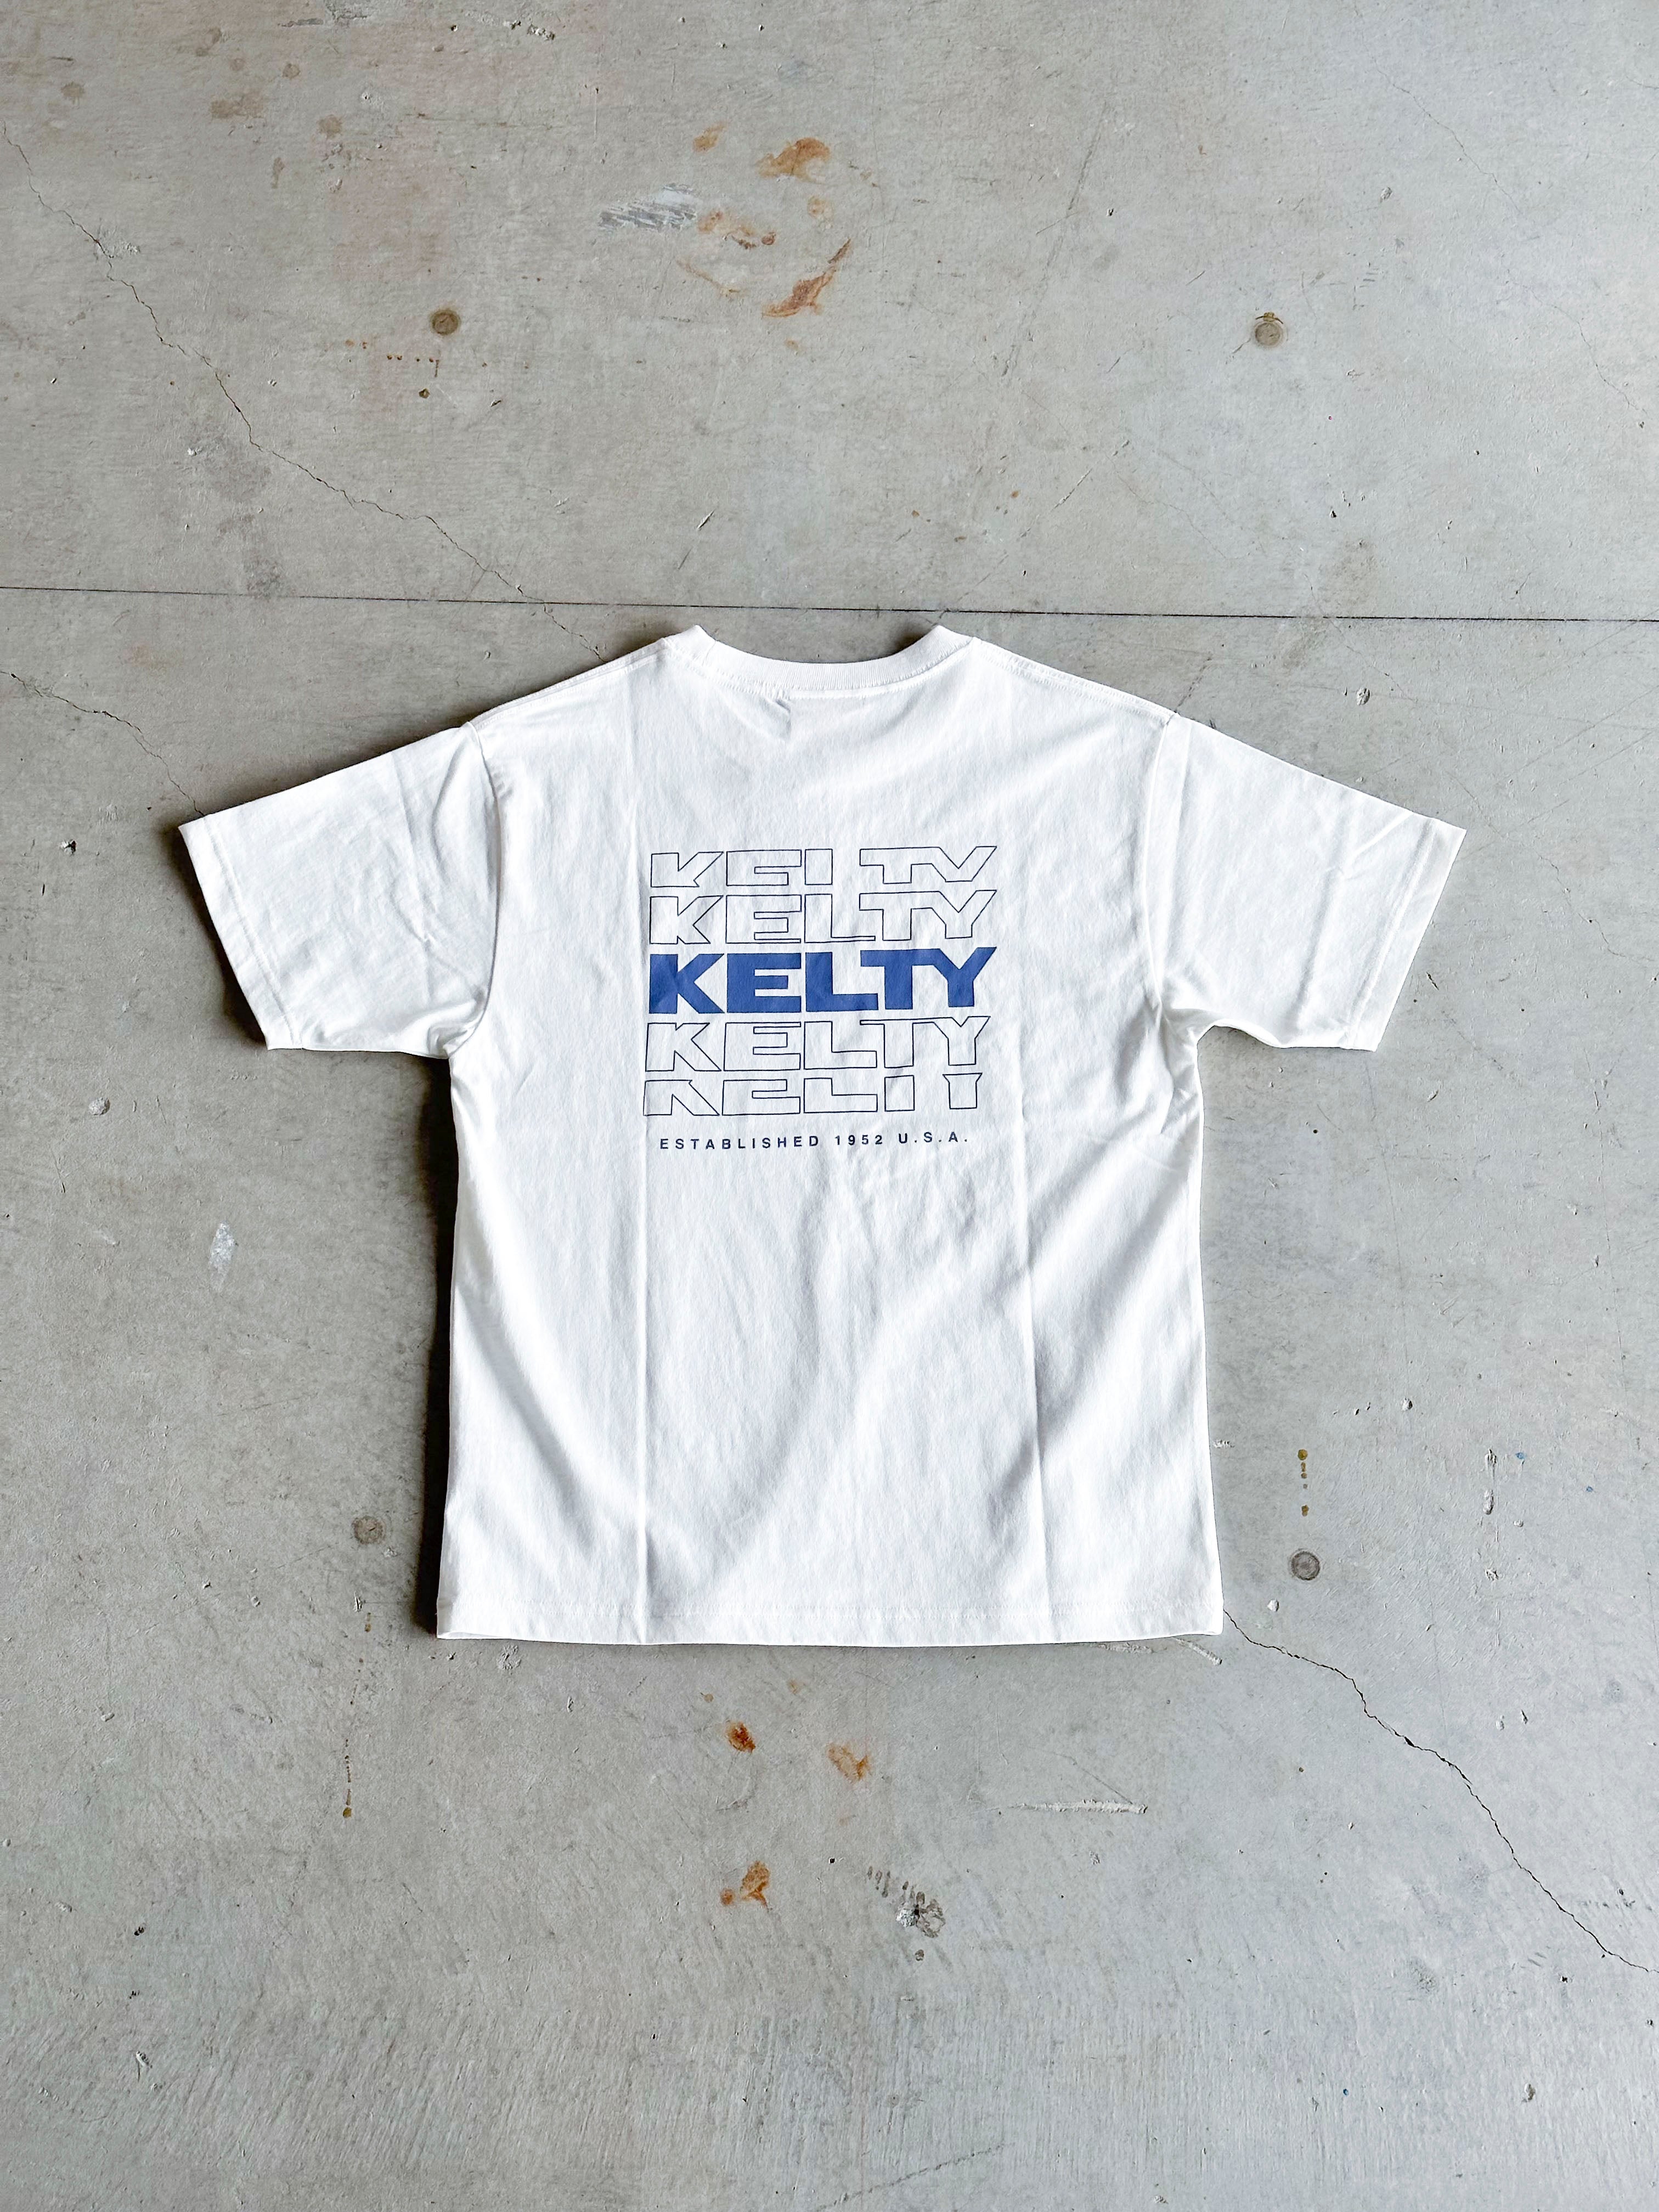 KELTY / バッグタイポロゴ S /S T シャツ